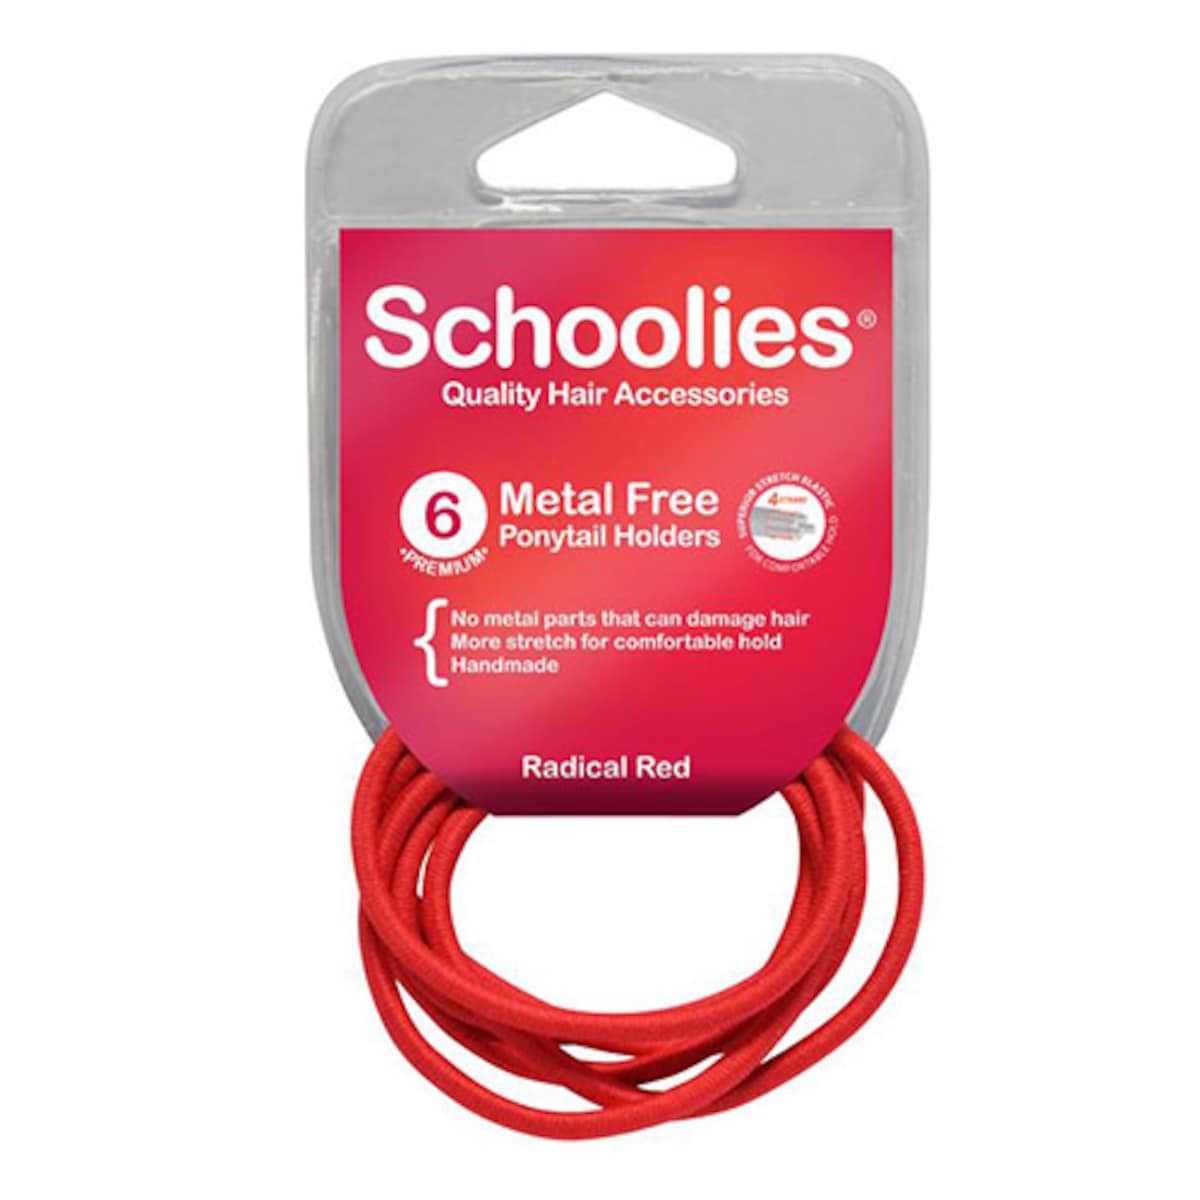 Schoolies #SC470 Metal Free Ponytail Holders Radical Red 6 Pack